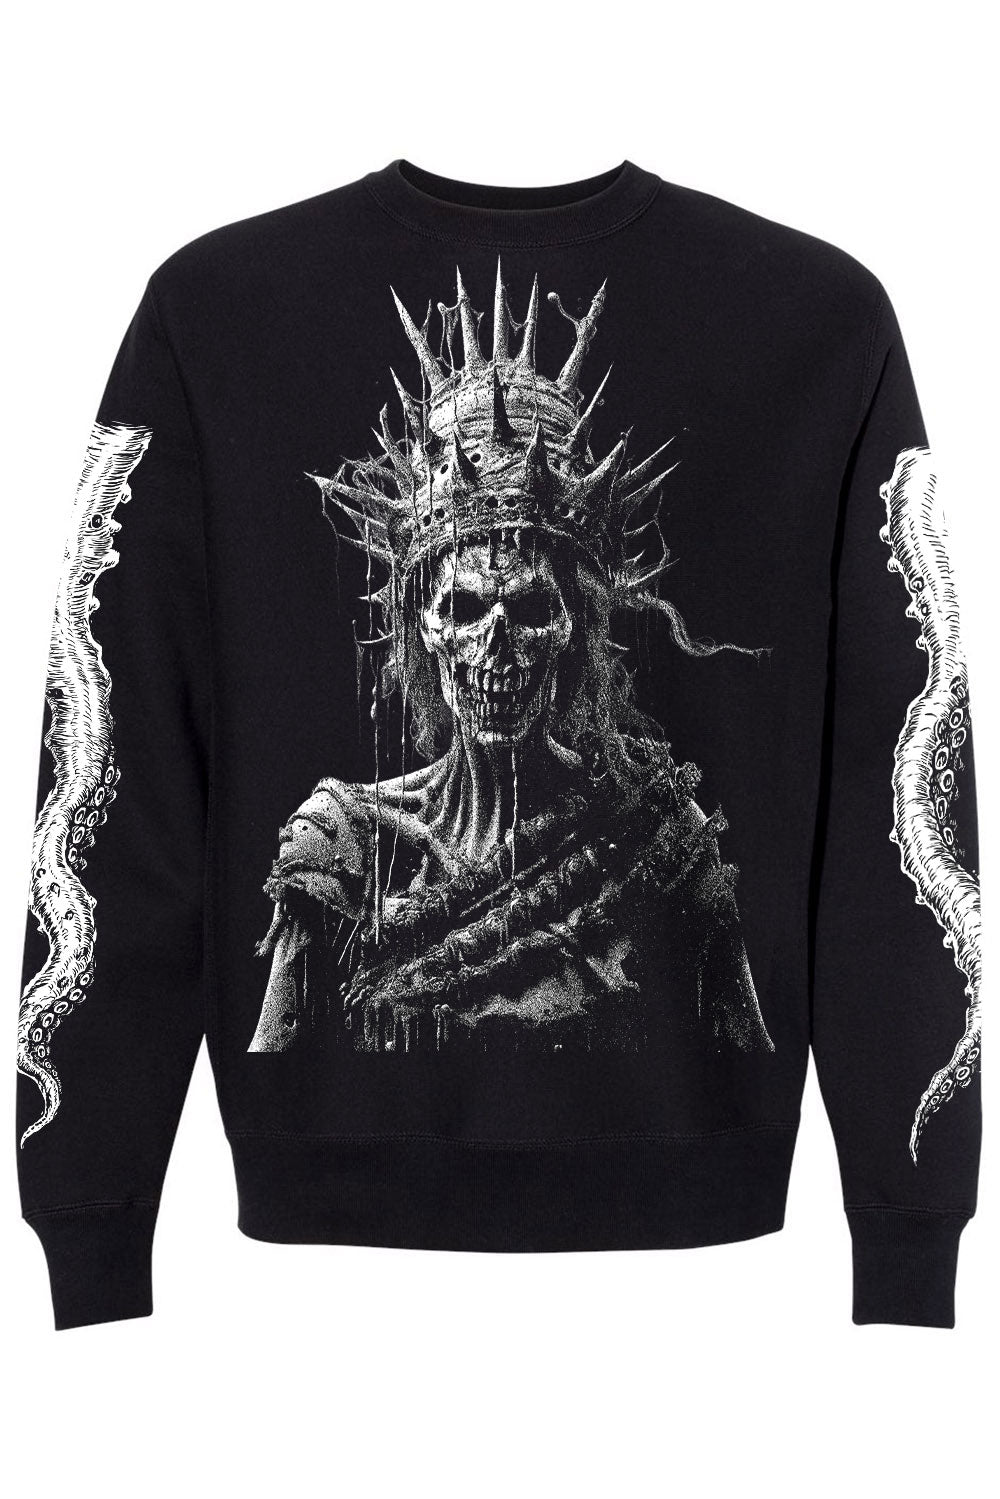 gothic ocean sweatshirt